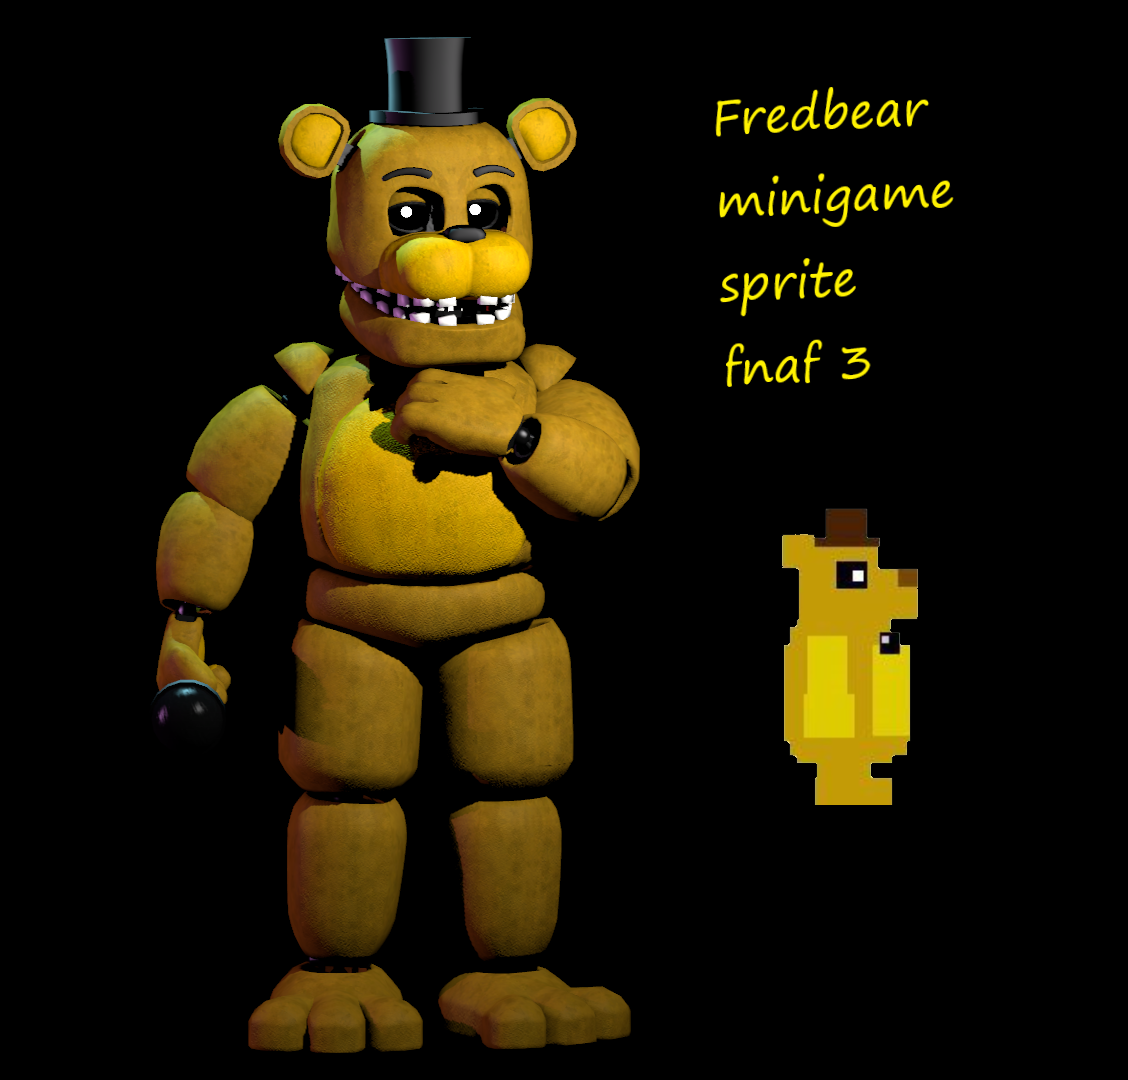 Minigame Fredbear Fnaf3 by Basilisk2002 on DeviantArt